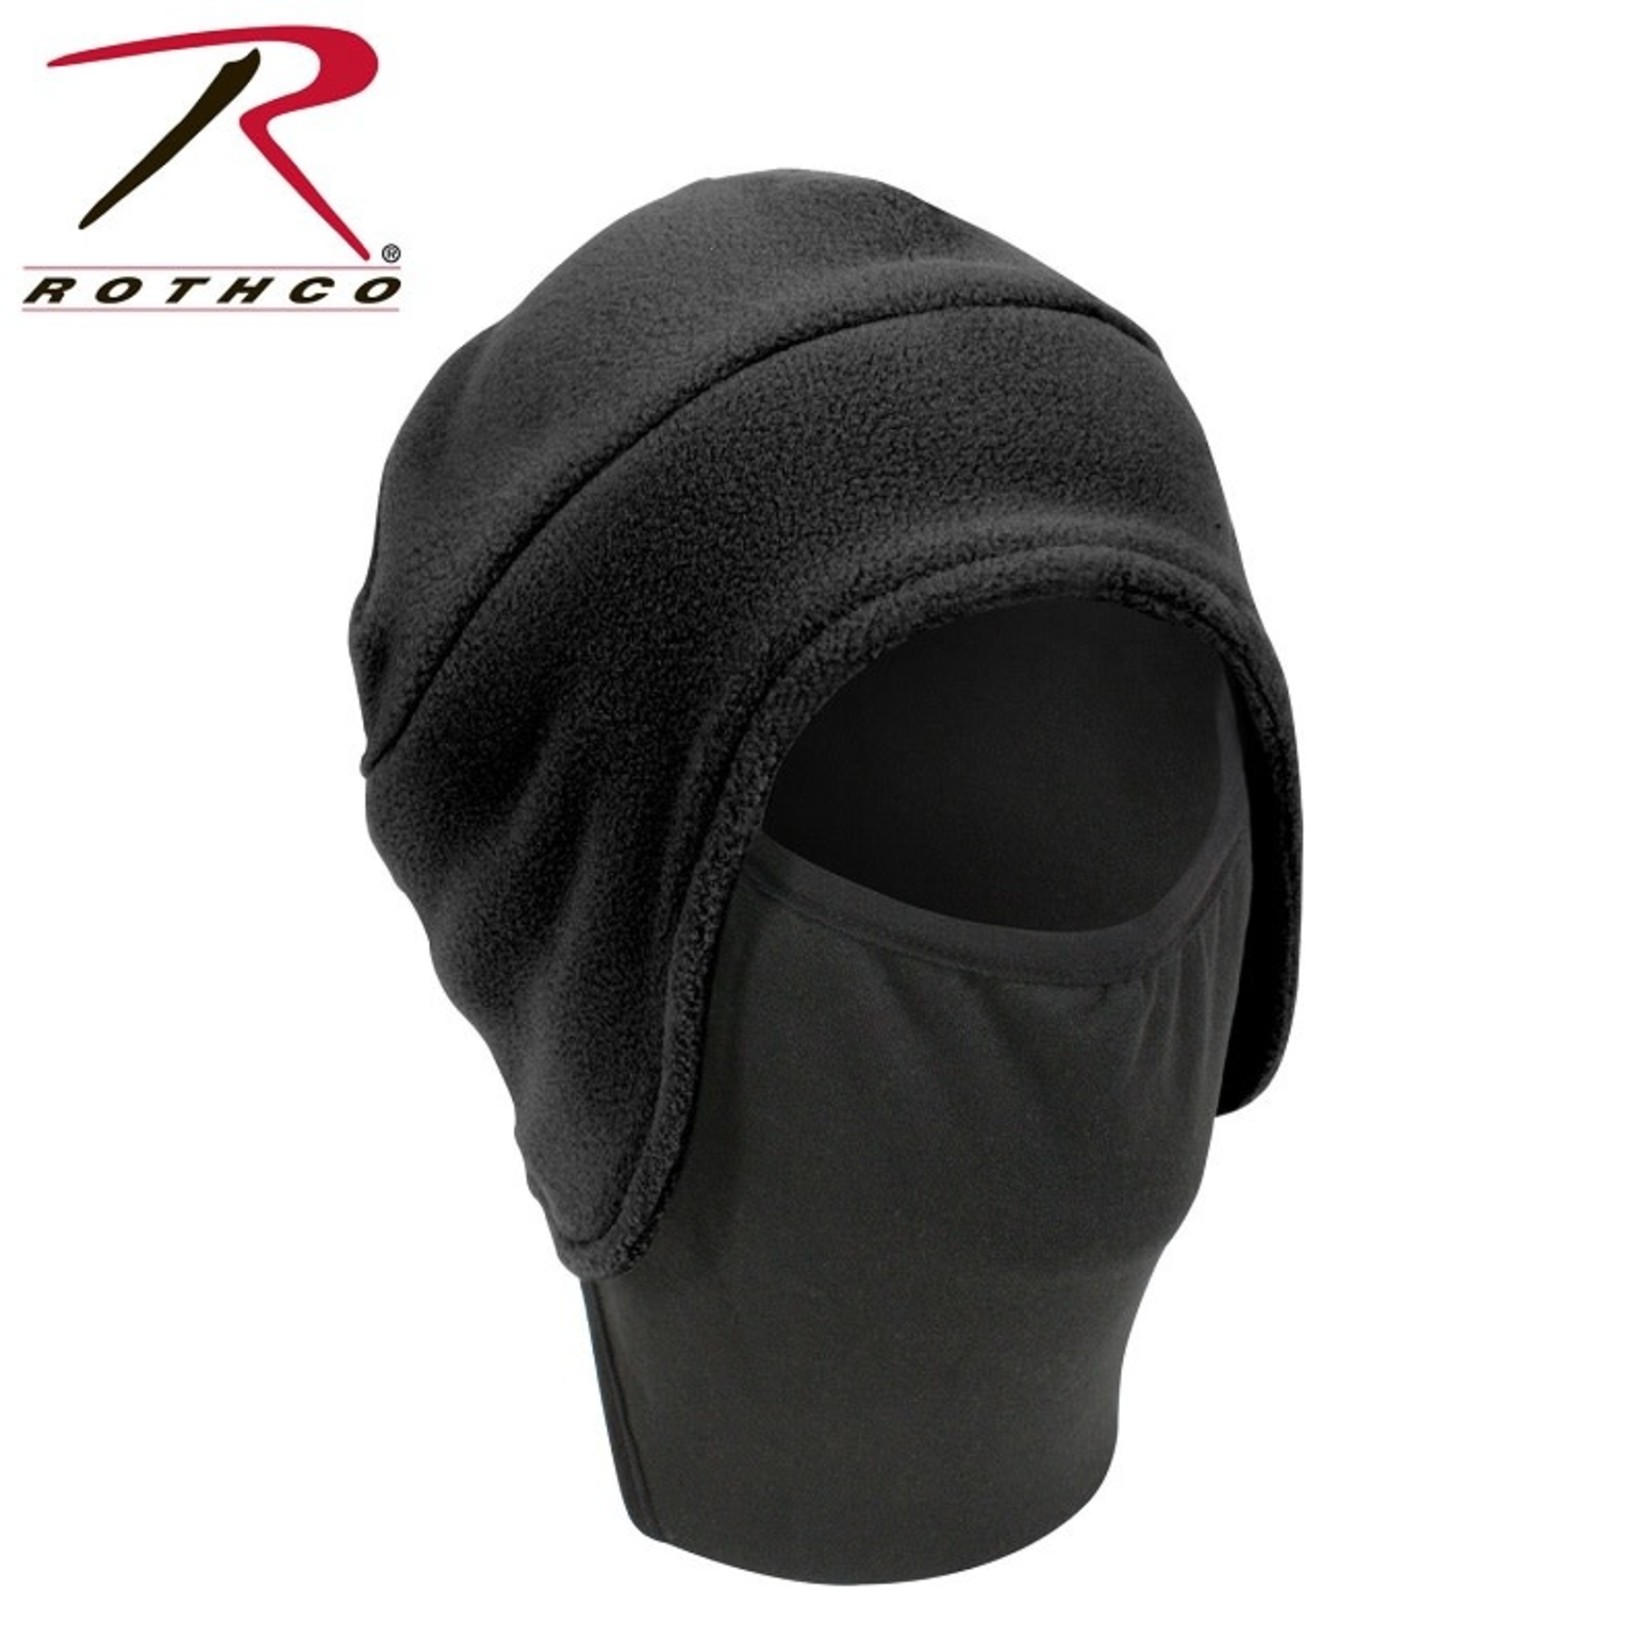 Rothco Rothco Convertible Fleece Cap With Poly Face Mask -